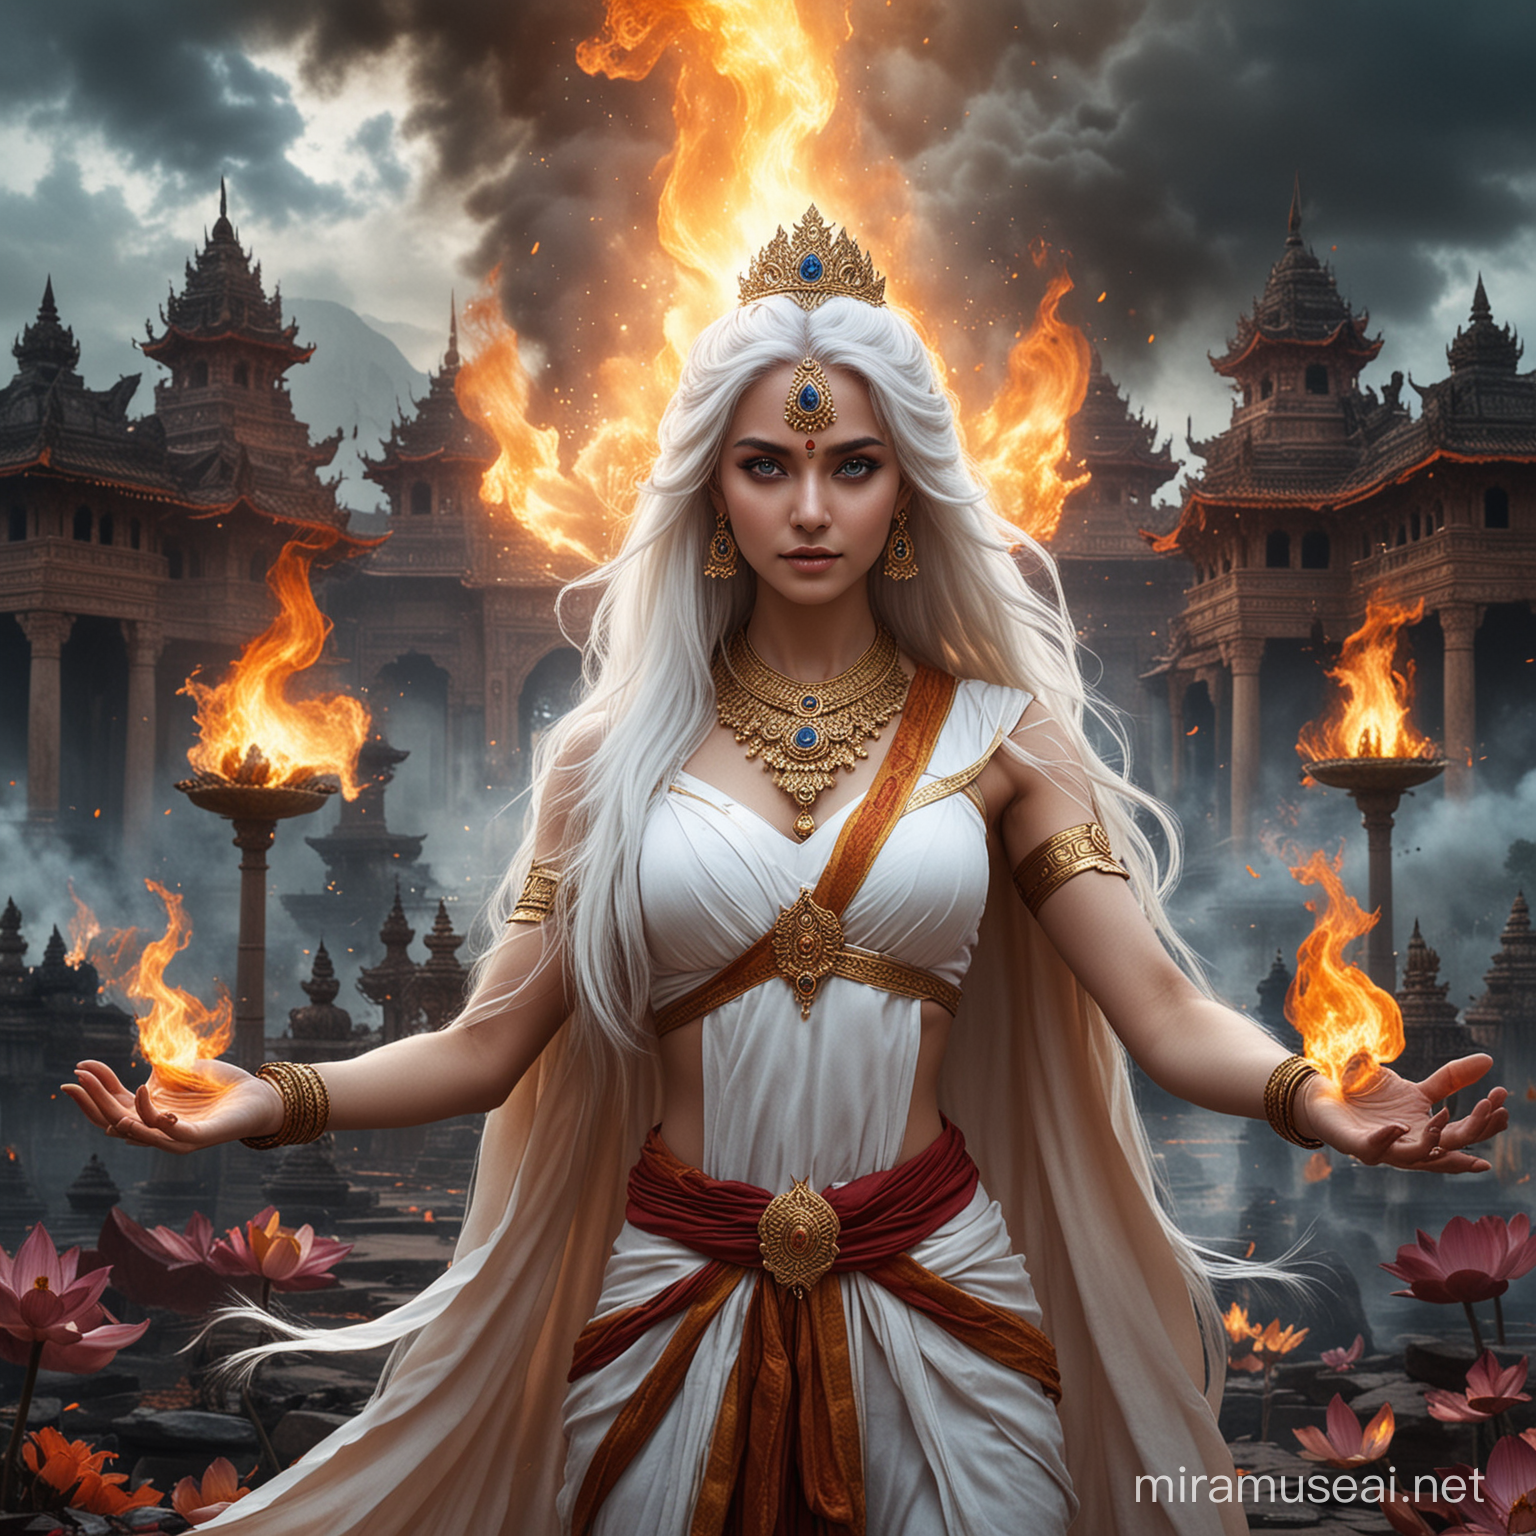 Fierce Hindu Empress Goddess Battles Demons Amidst Fiery Inferno